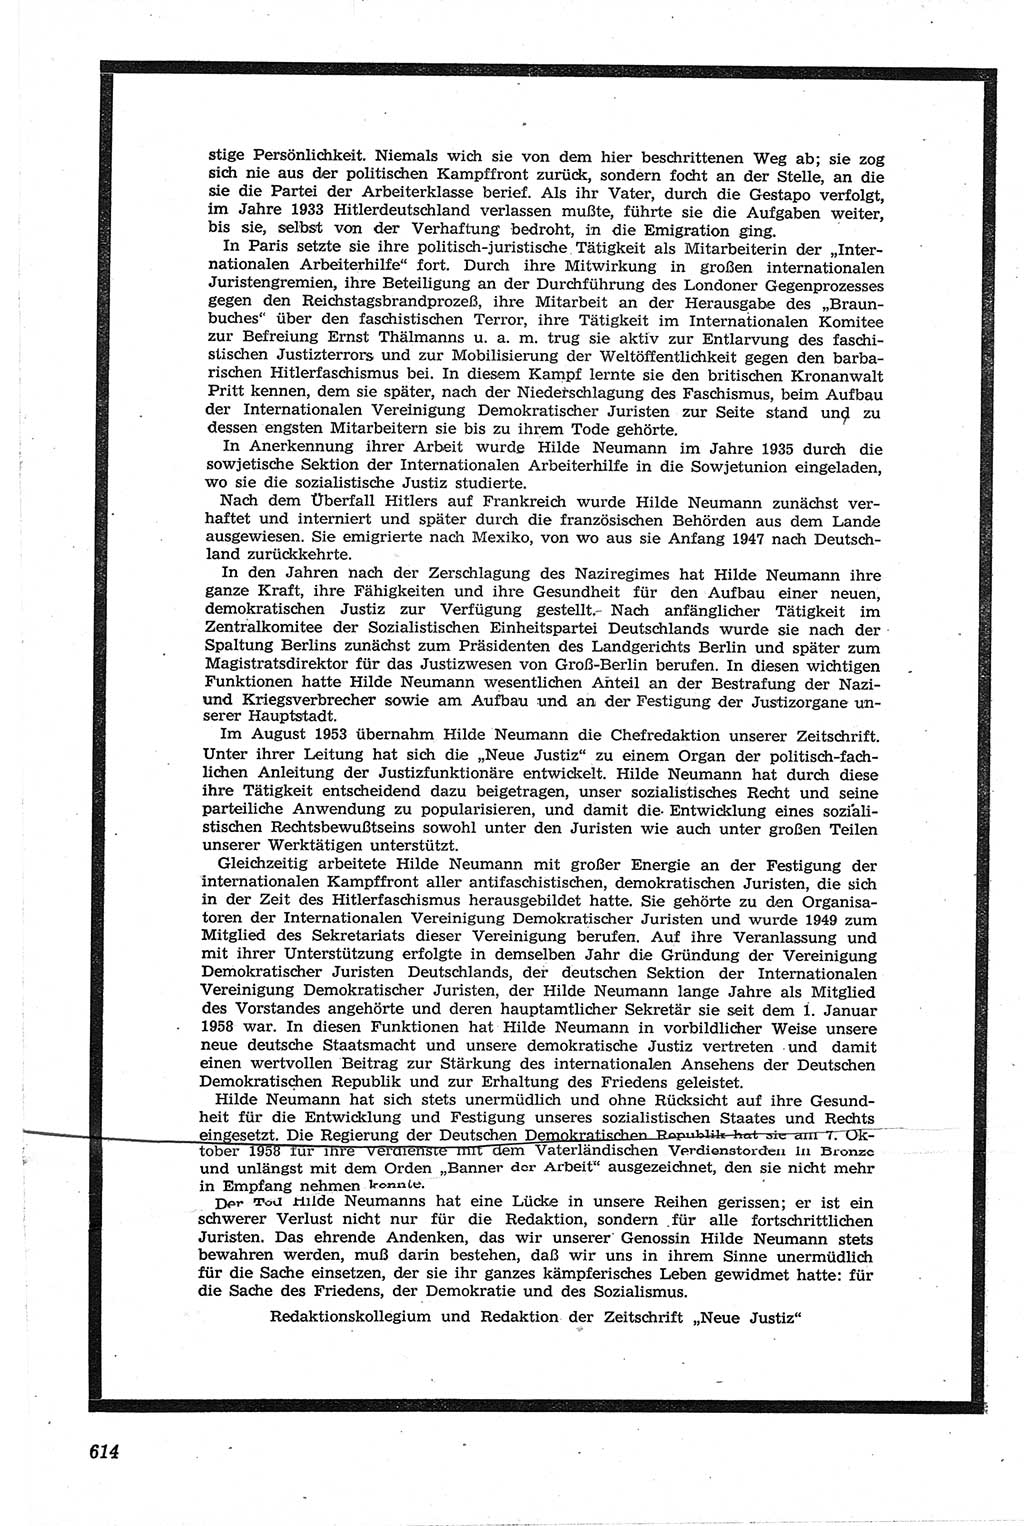 Neue Justiz (NJ), Zeitschrift für Recht und Rechtswissenschaft [Deutsche Demokratische Republik (DDR)], 13. Jahrgang 1959, Seite 614 (NJ DDR 1959, S. 614)